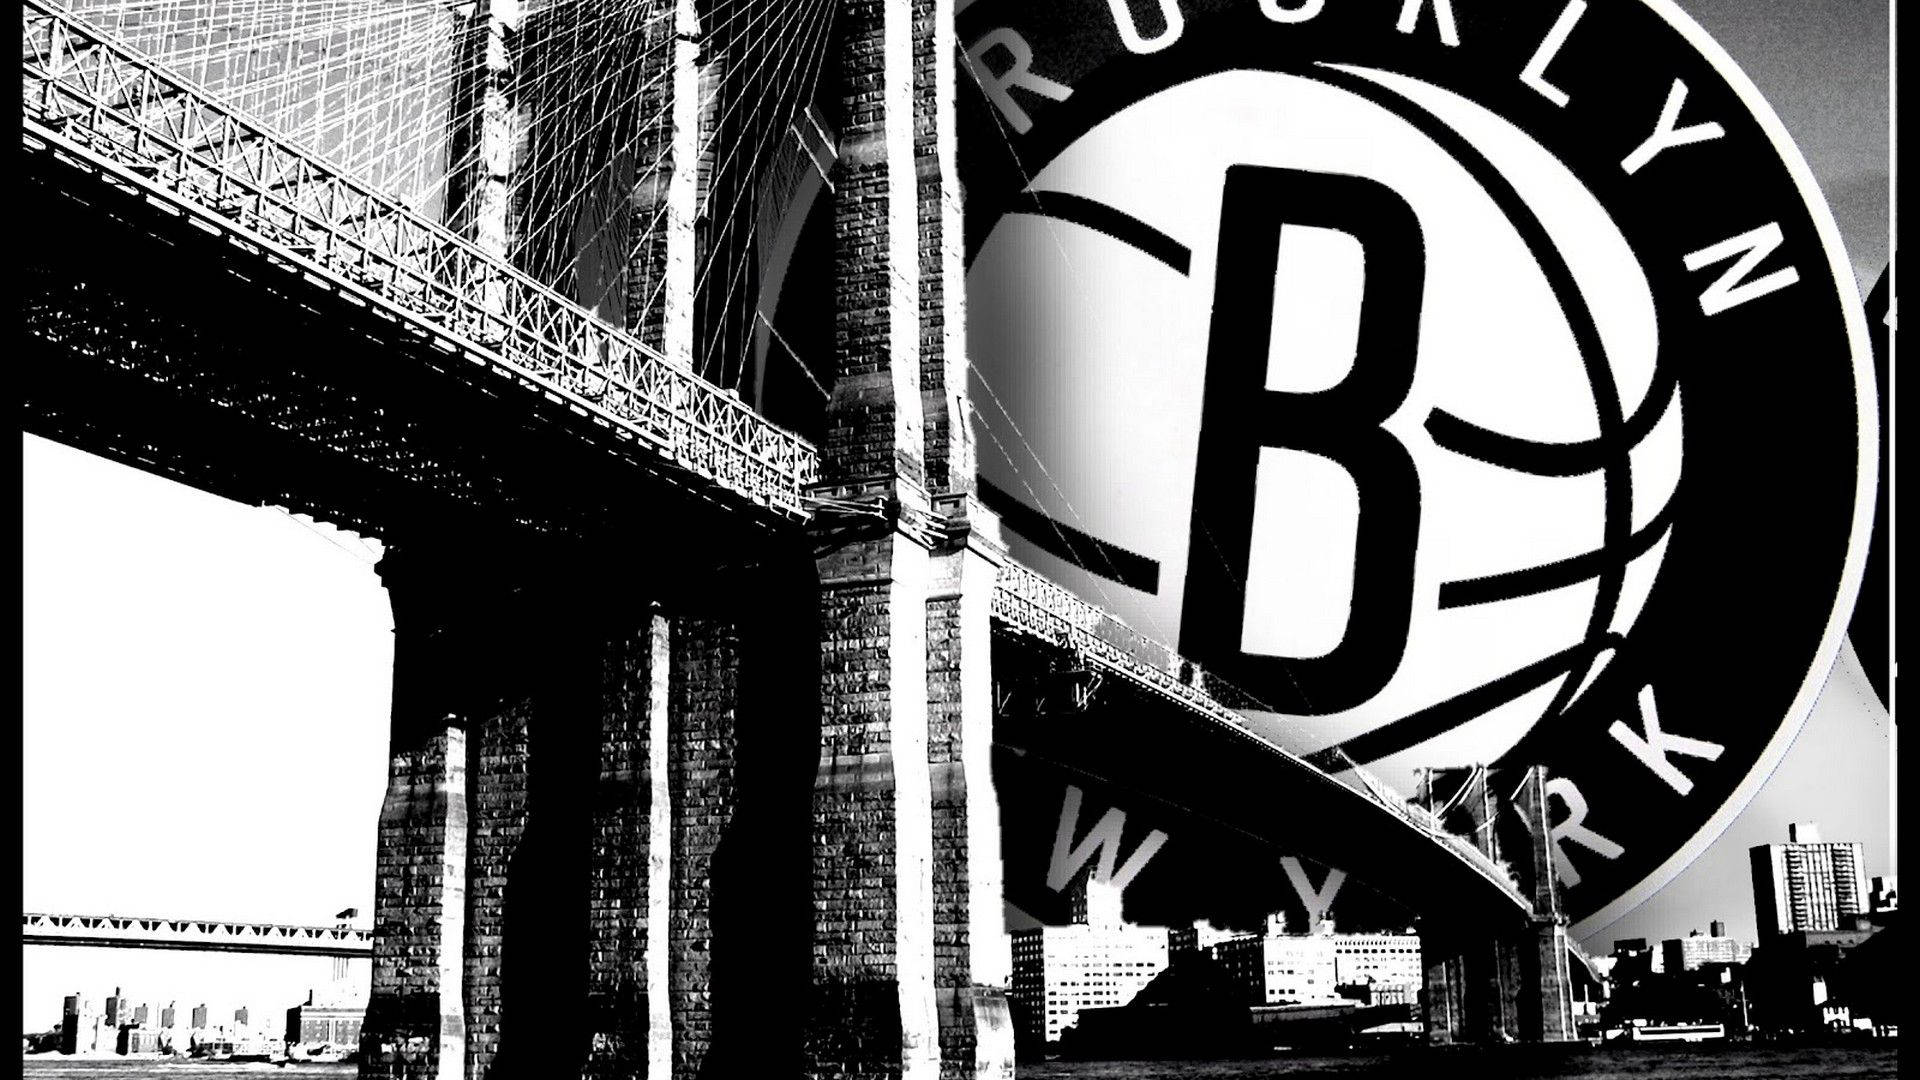 Logotipode Brooklyn Nets En Escala De Grises Fondo de pantalla